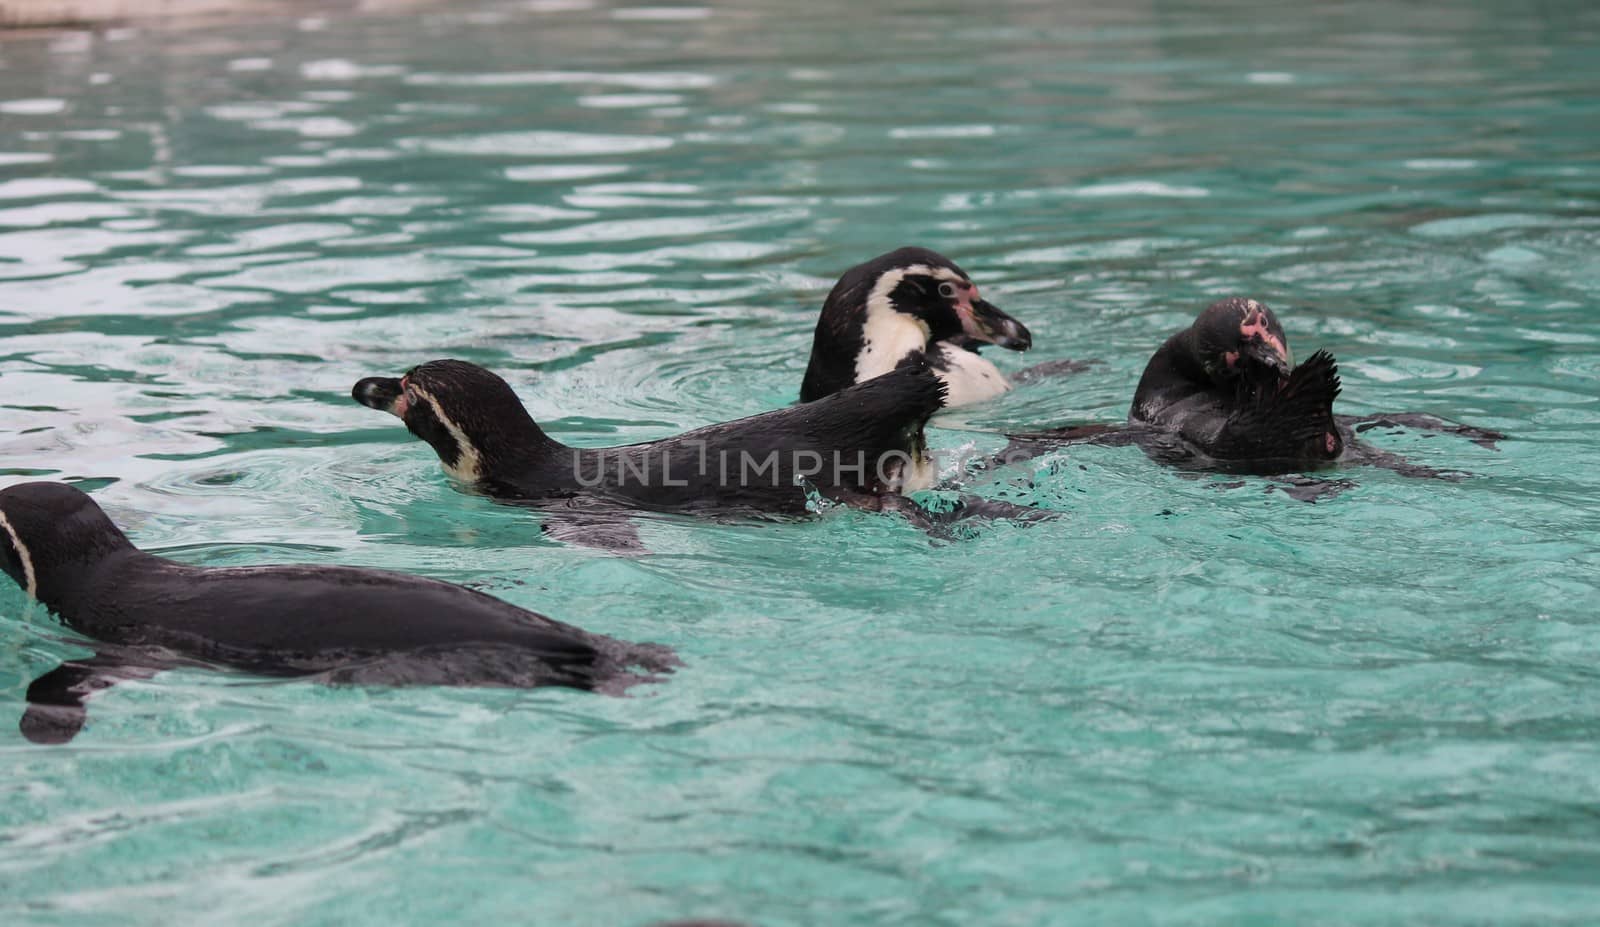 Humboldt Penguin (Spheniscus humboldti) swims